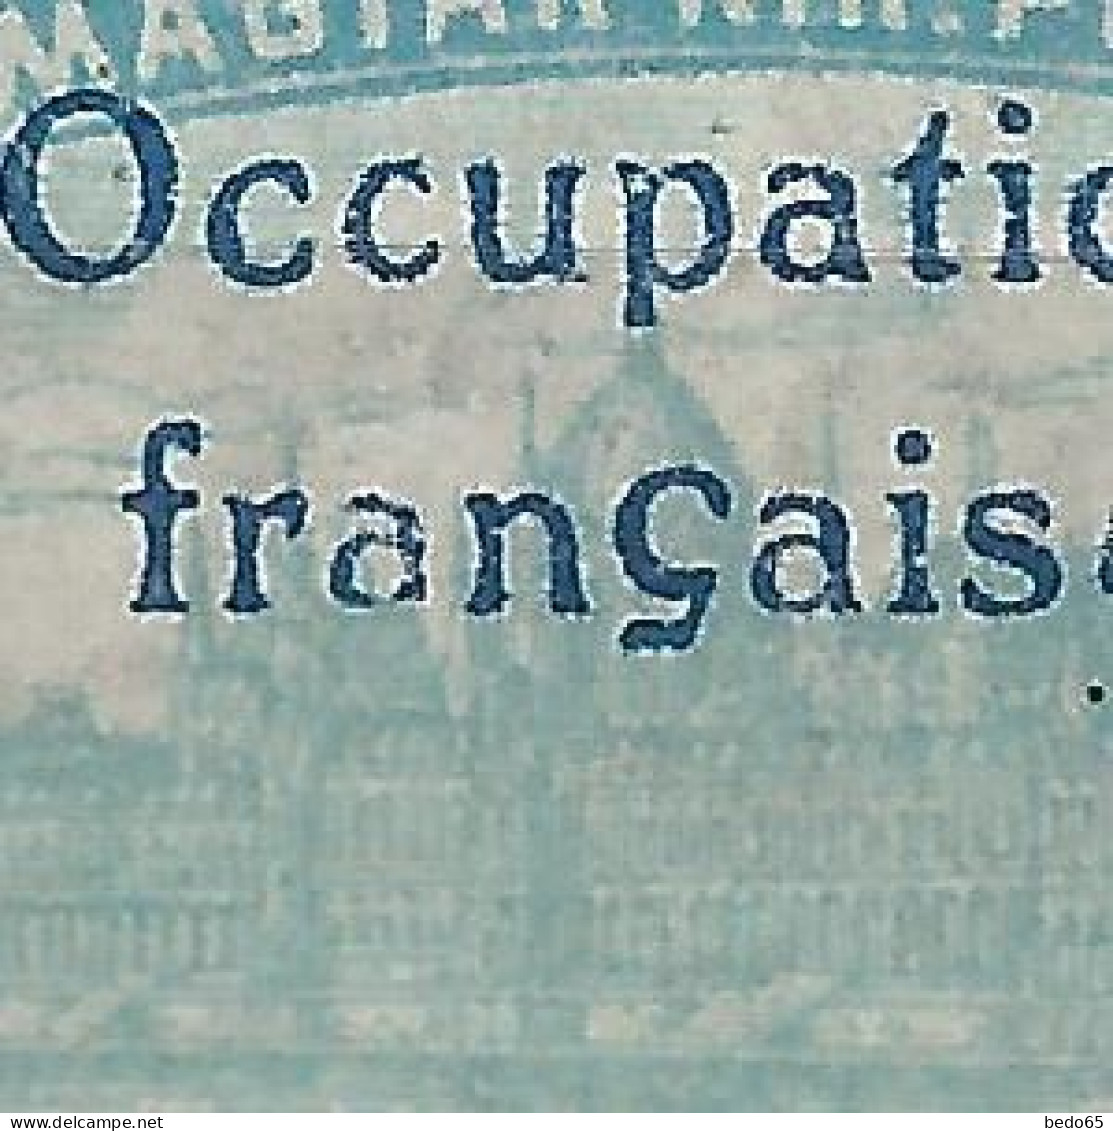 HONGRIE ( ARAD )  N° 16 Variétée A De Française Maigre Tenant à Normal NEUF** LUXE SANS CHARNIERE / Hingeless / MNH - Unused Stamps